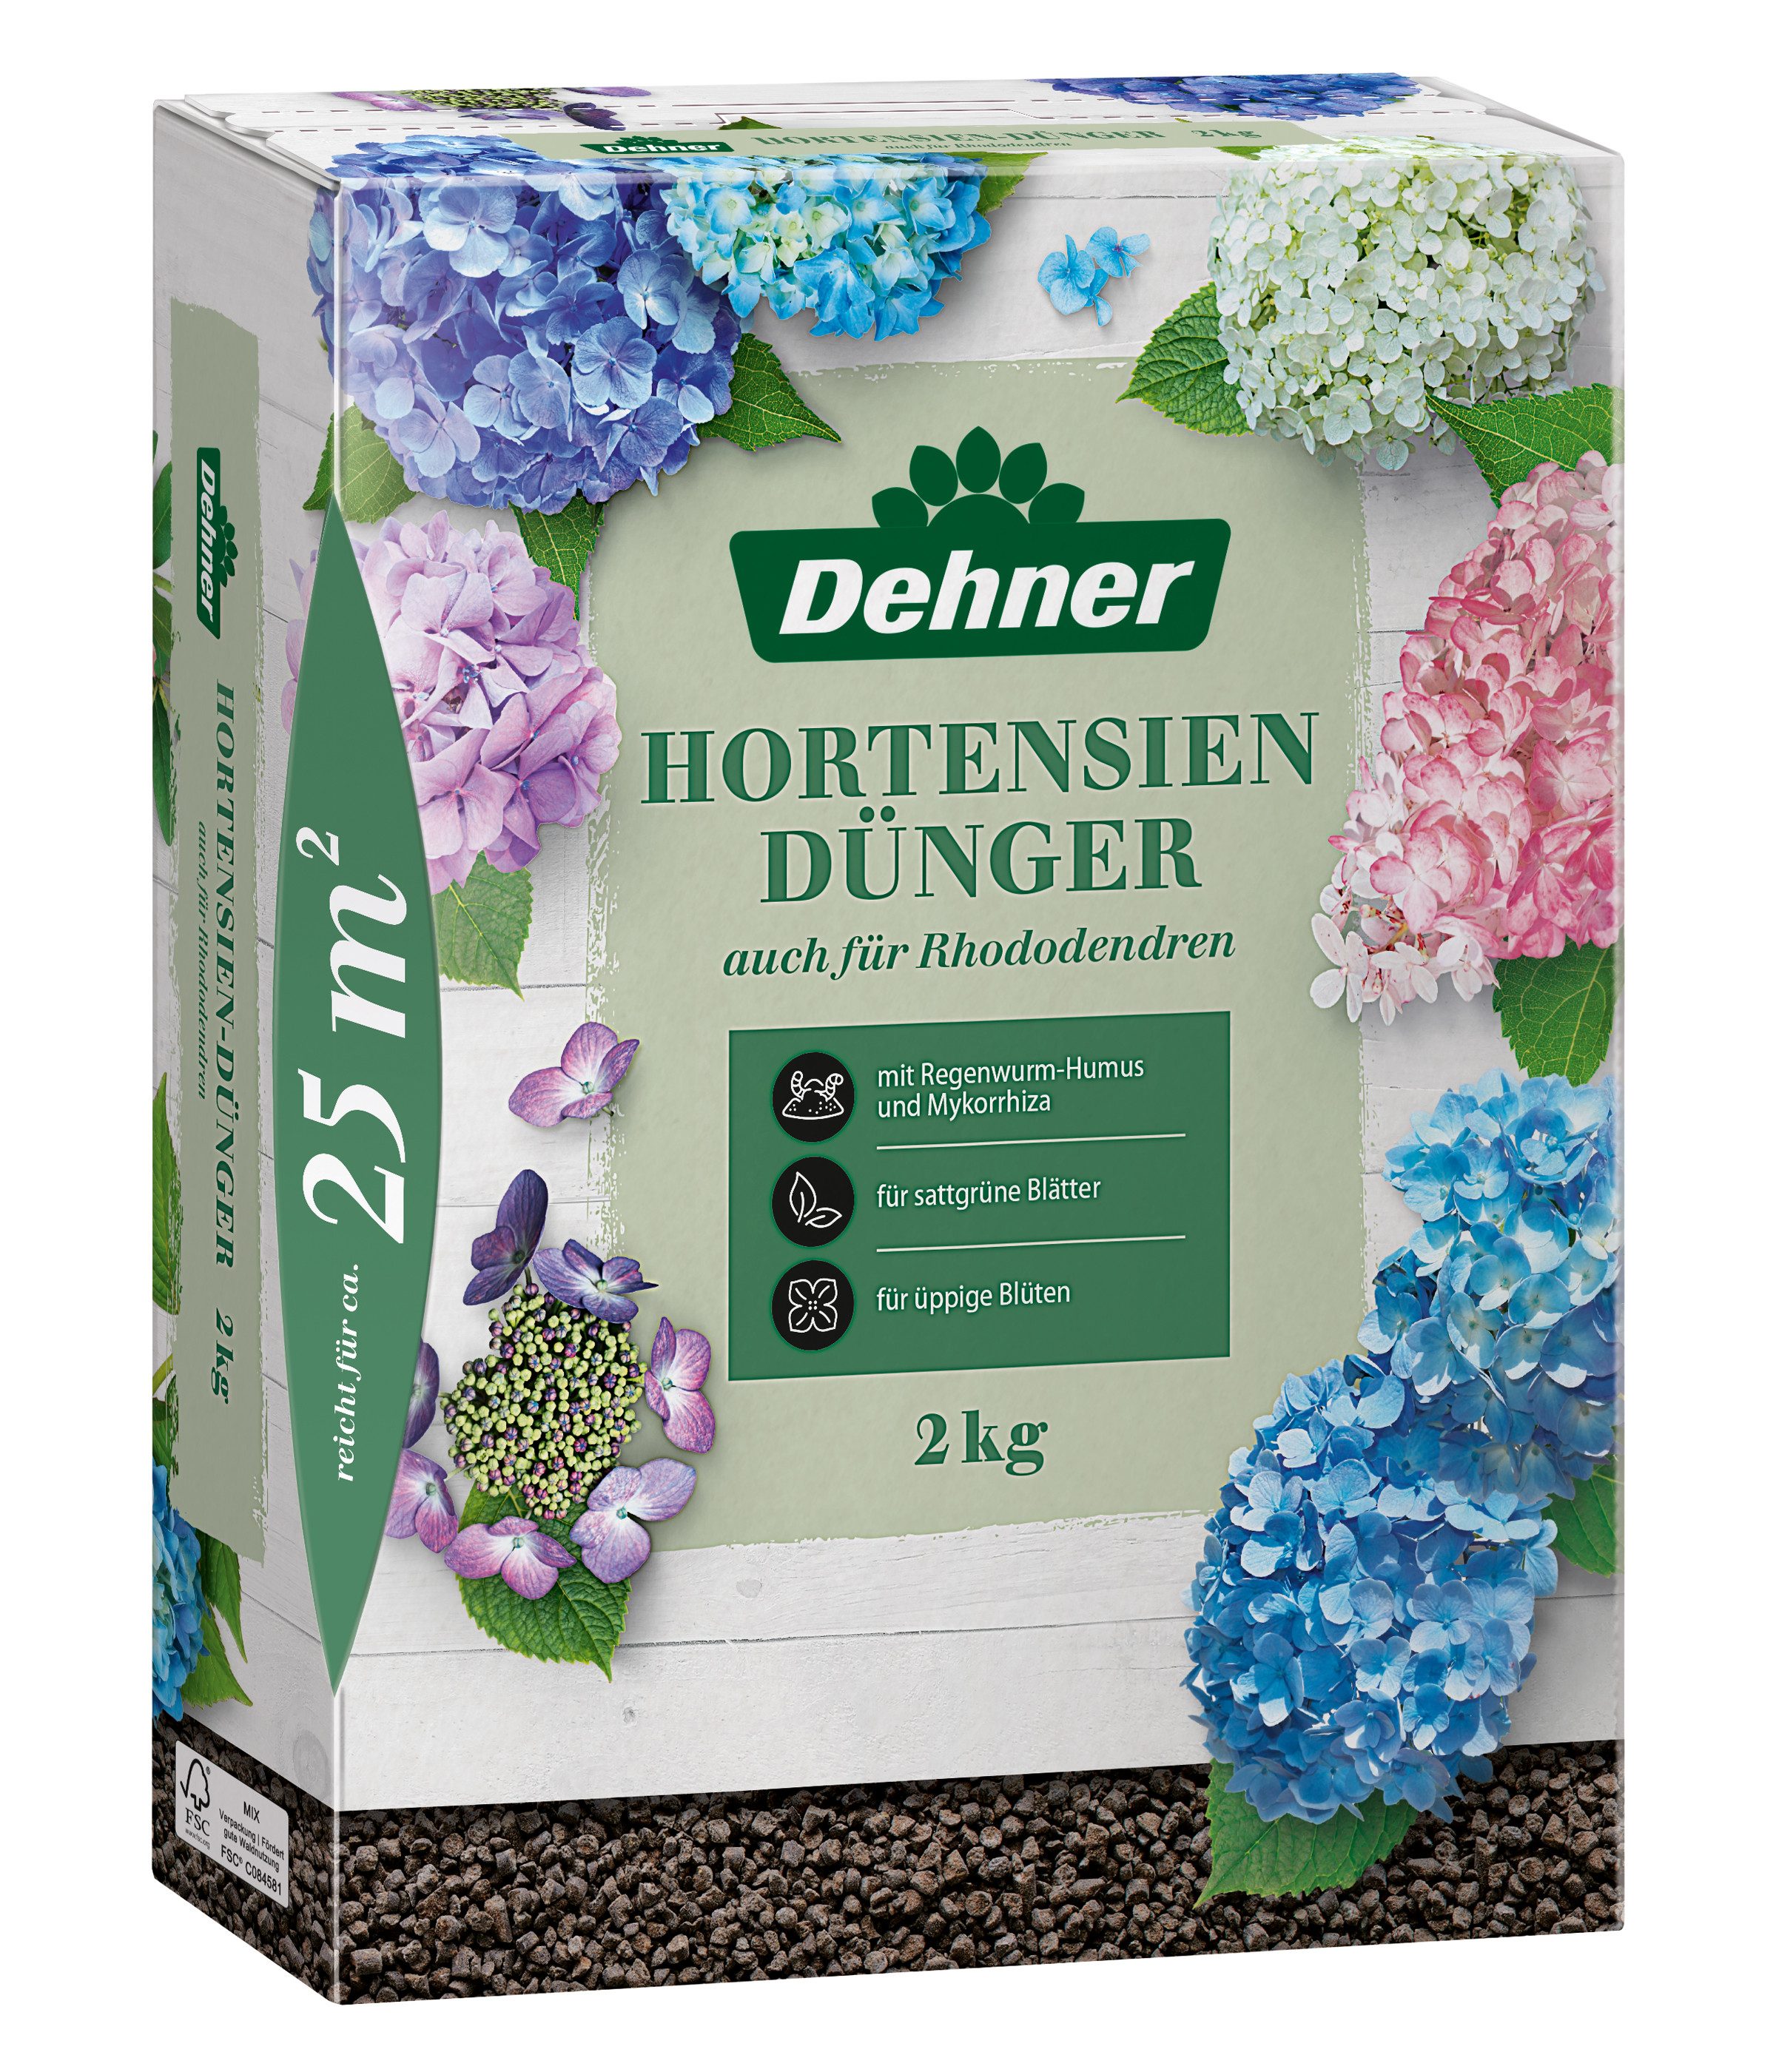 Dehner Gartendünger Hortensiendünger, hochwertiger NPK-Dünger für Laubgehölze, organisch mit Spurennährstoffen